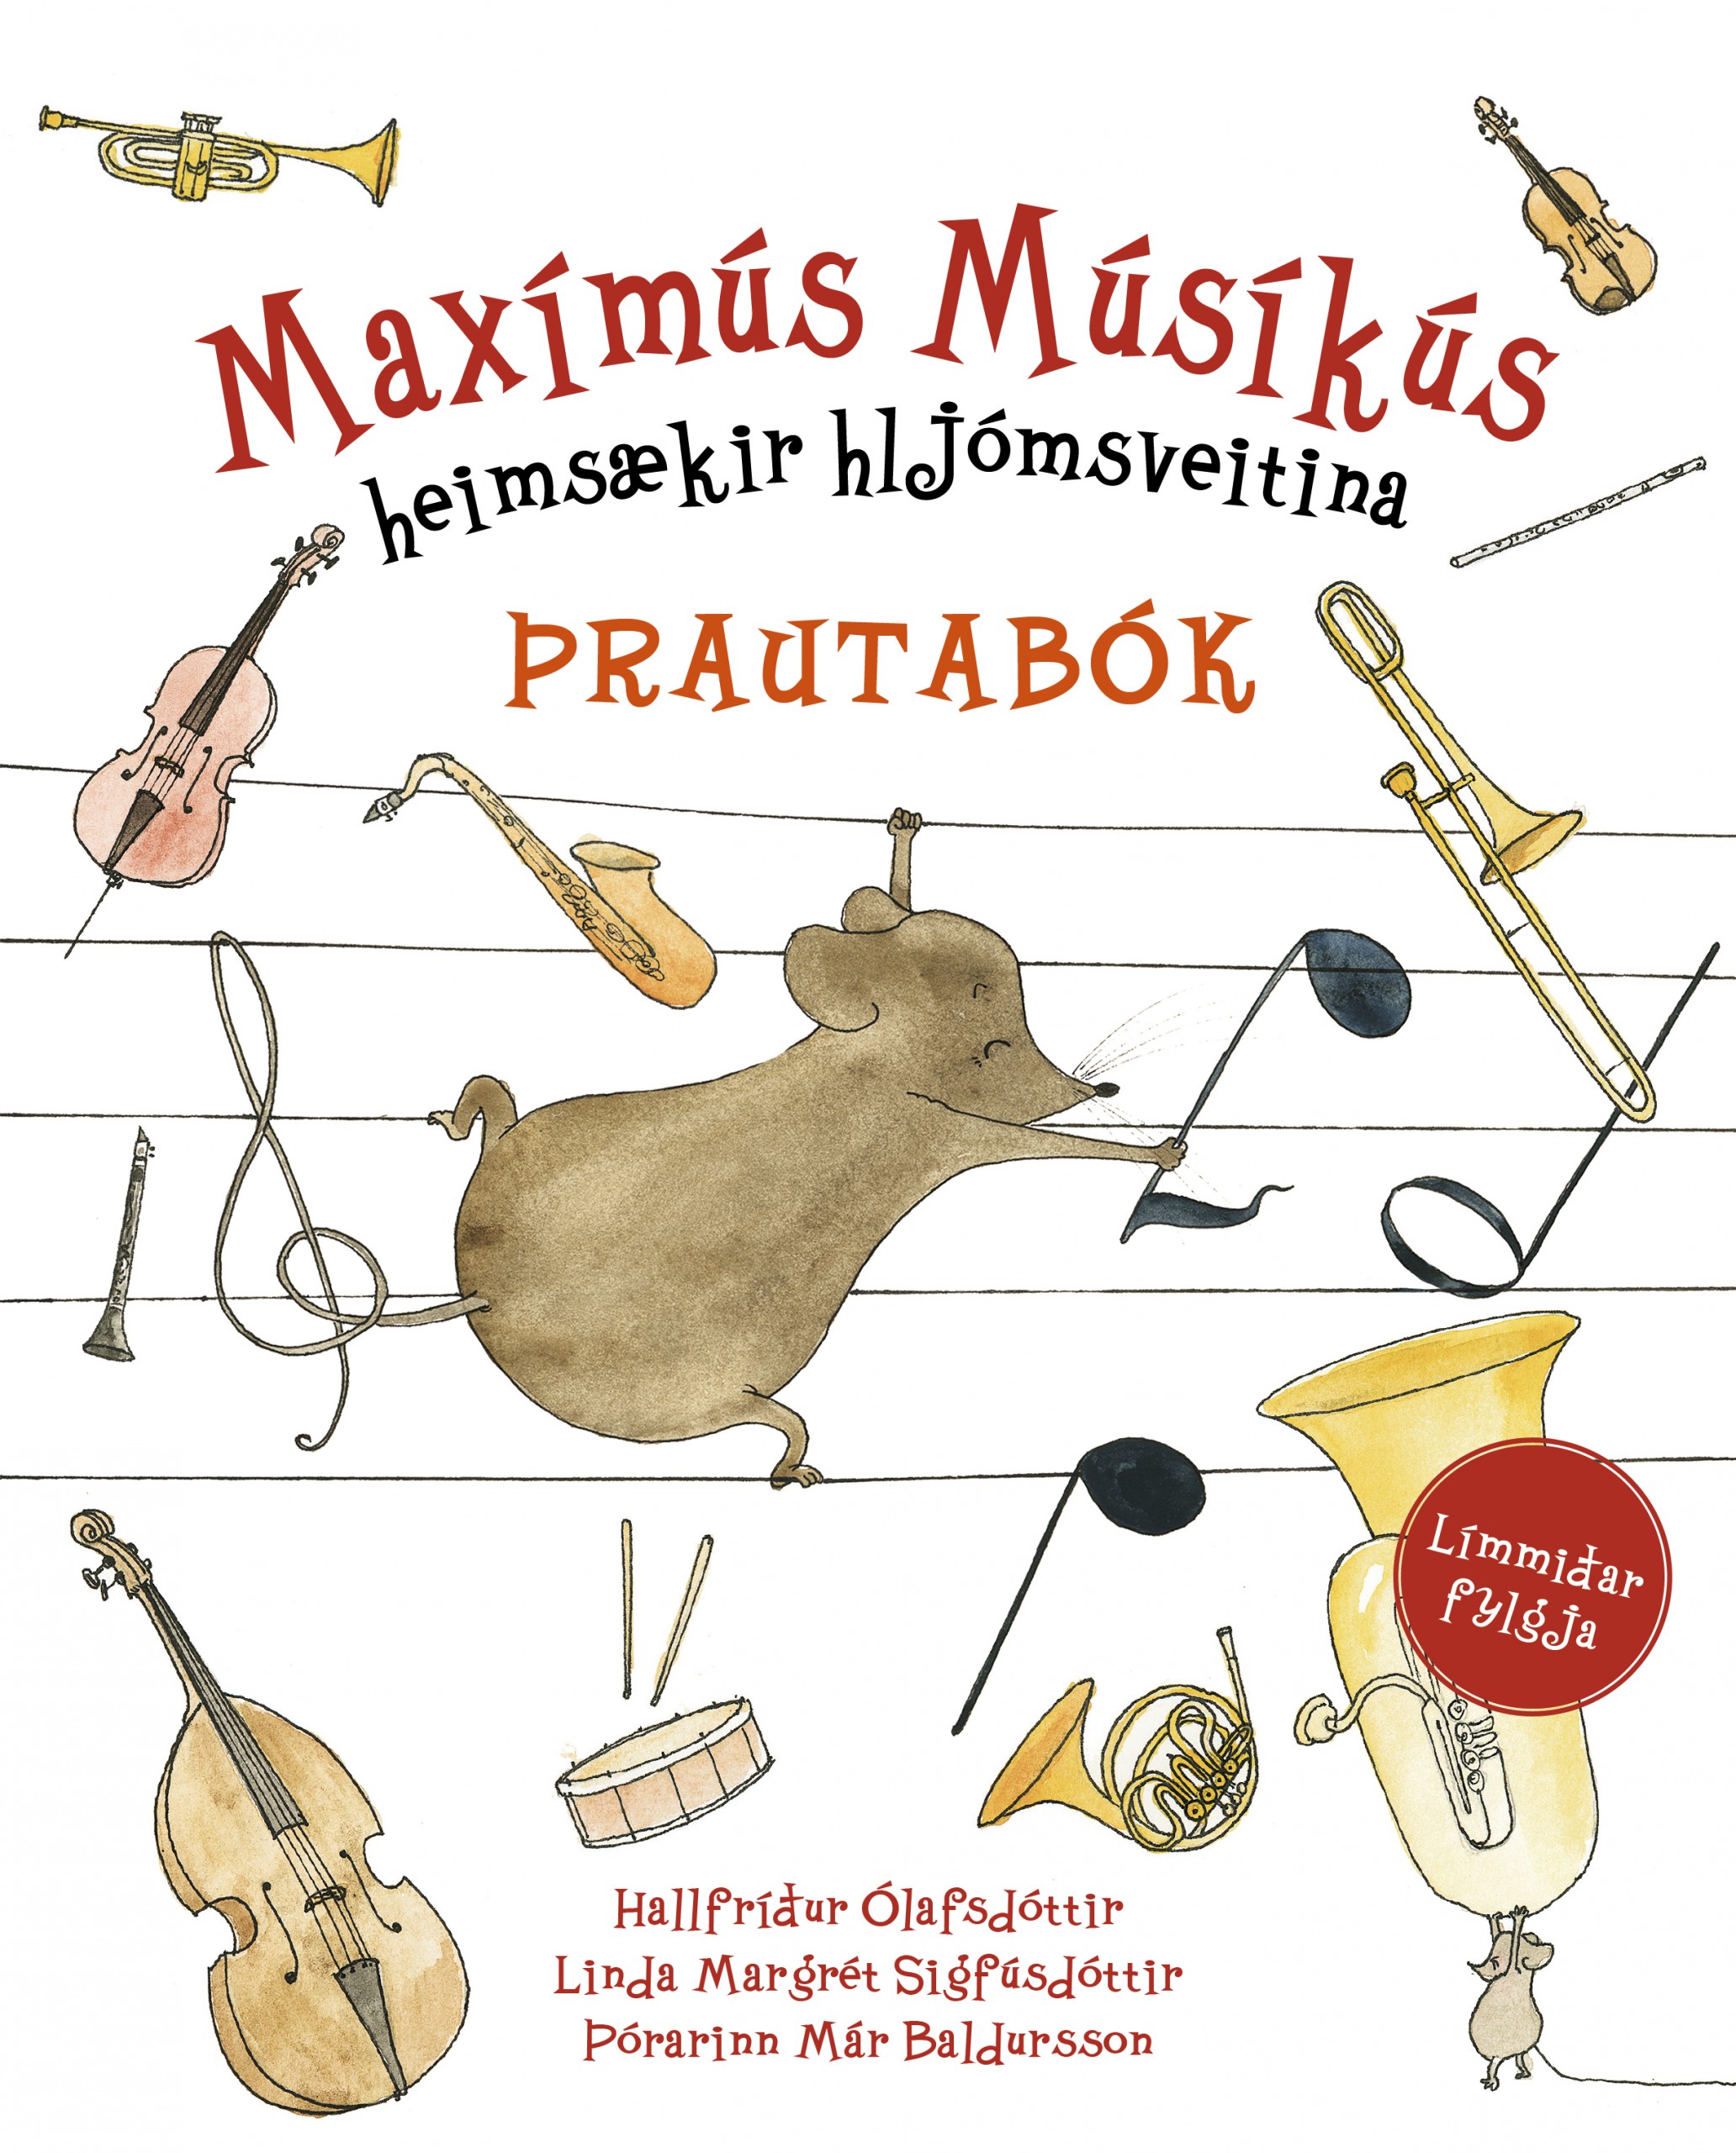 Maximus Musicus Meets the Choir (2014)